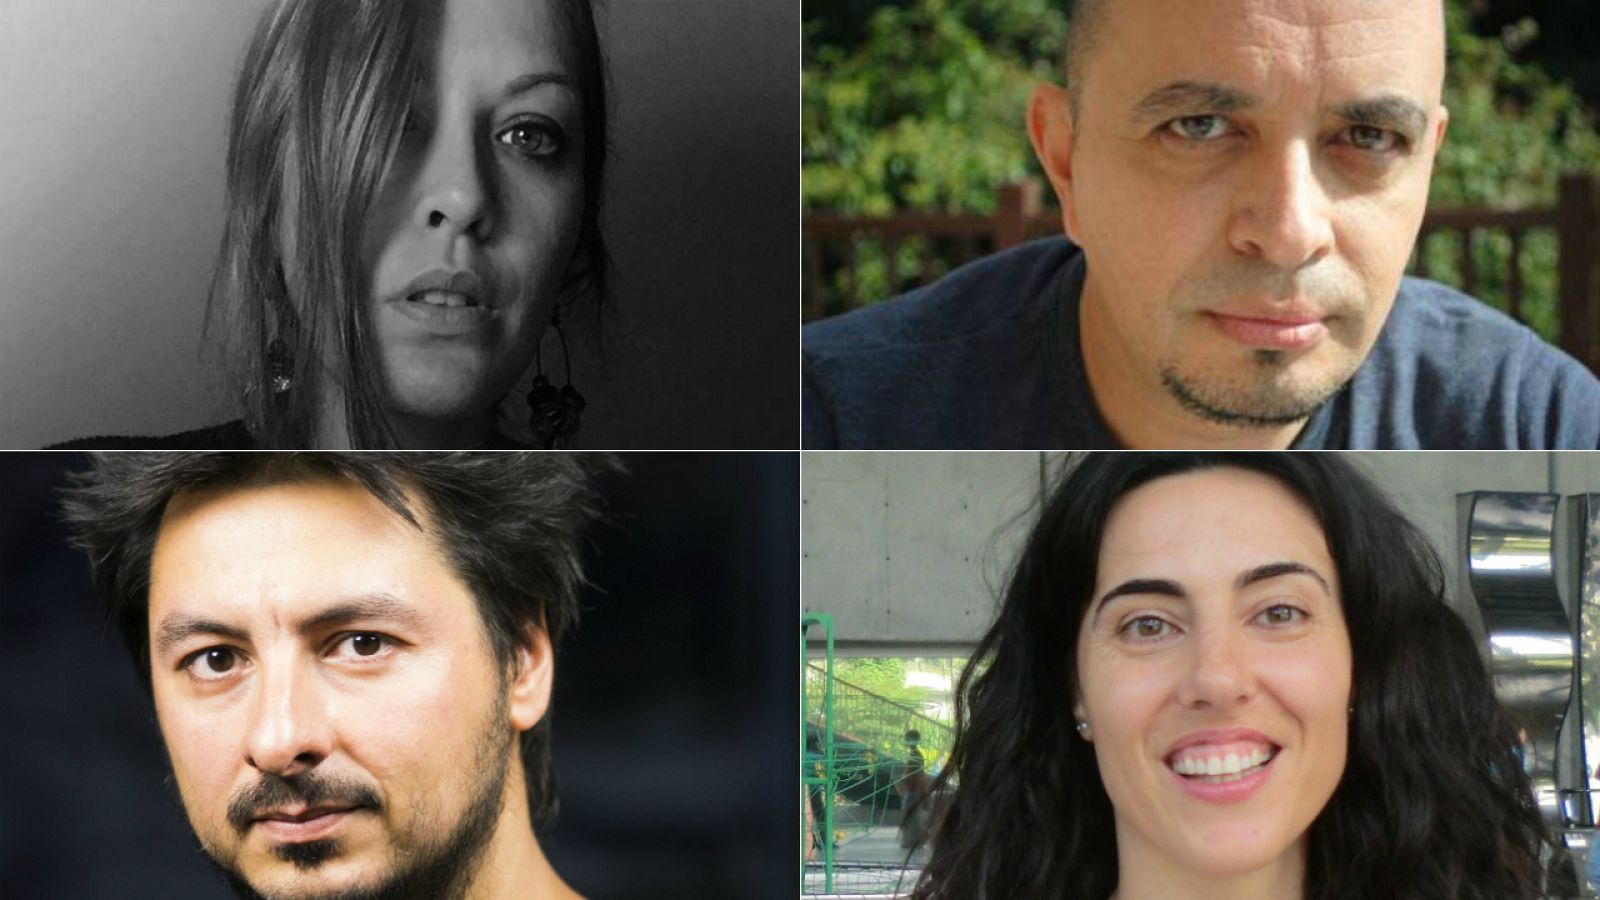 María Sotomayor, Juan Antonio González Iglesias, Antonio Lucas y Raquel Lanseros debatirán sobre poesía en la segunda jornada de Cultura 16.